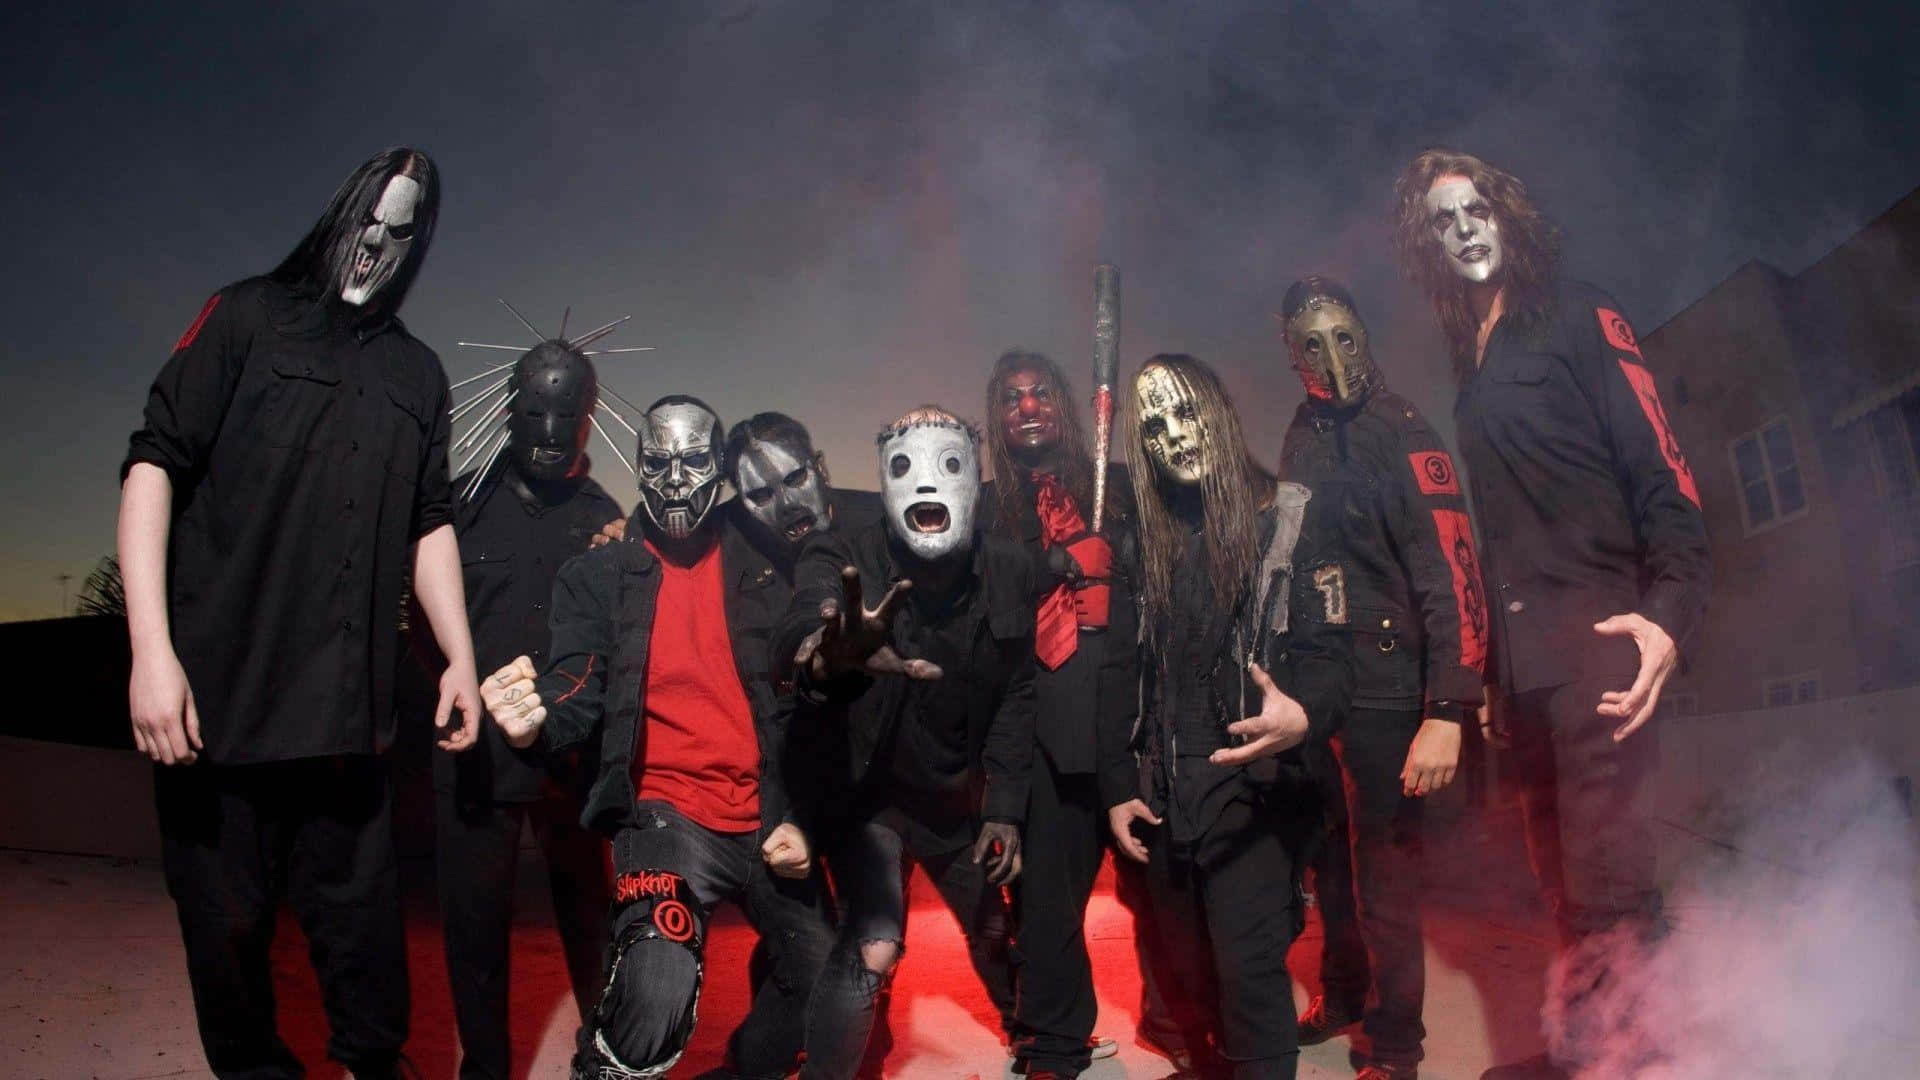 Bandade Heavy Metal Slipknot Vistiendo Ropa Oscura Y Actuando En El Escenario. Fondo de pantalla